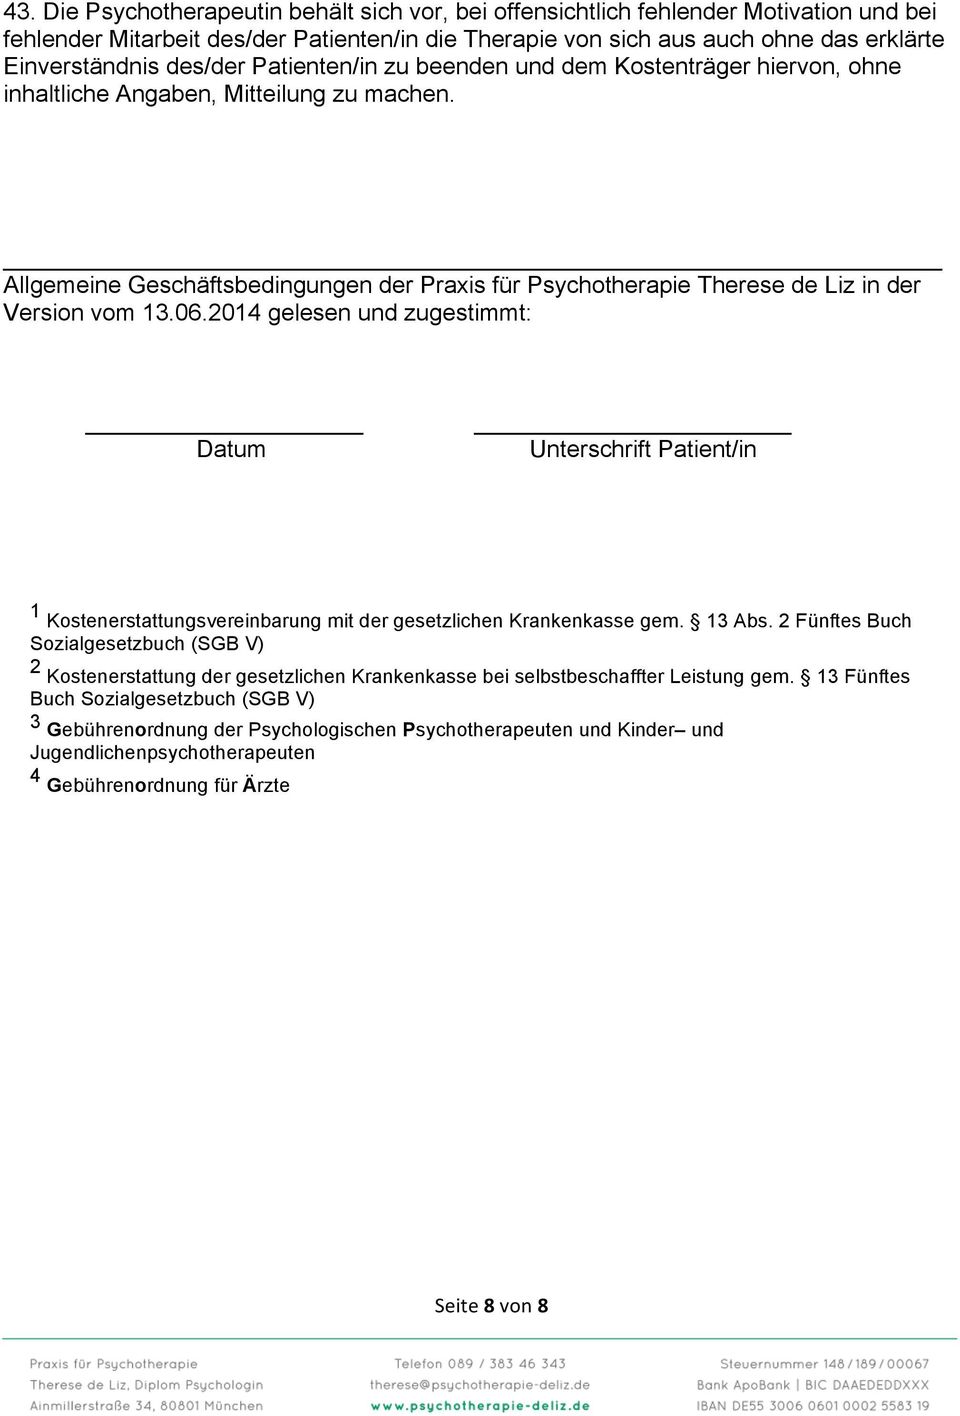 Allgemeine Geschäftsbedingungen der Praxis für Psychotherapie Therese de Liz in der Version vom 13.06.